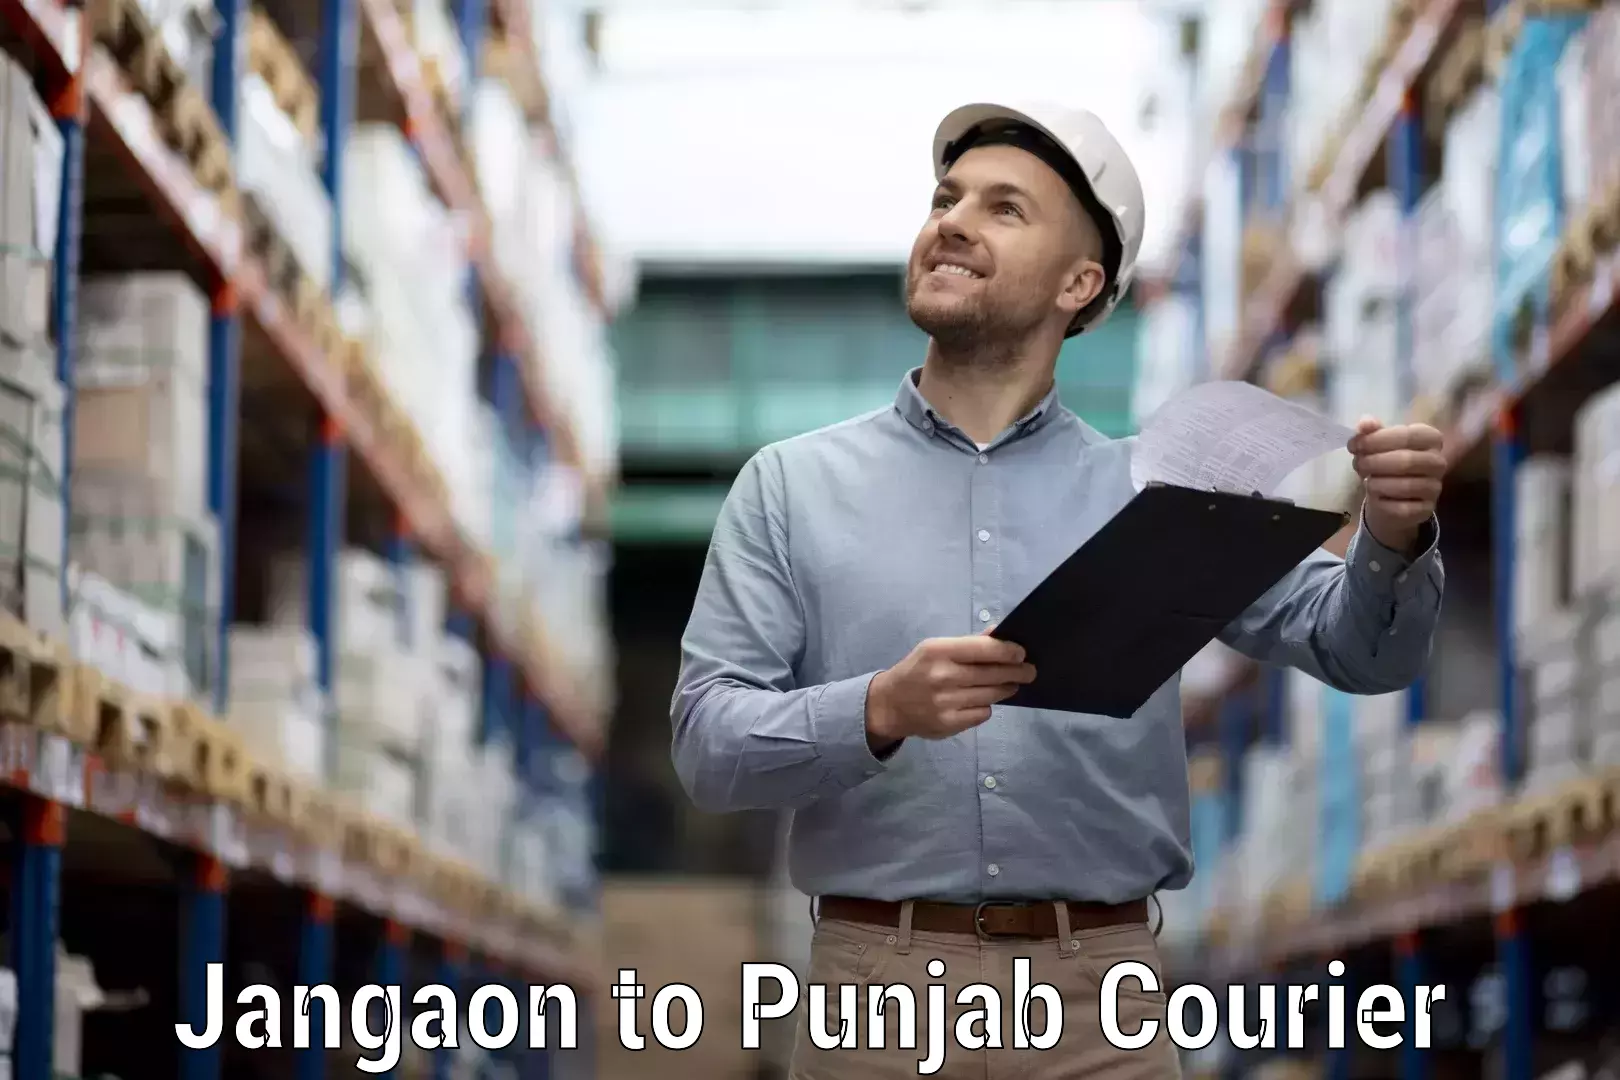 On-demand shipping options Jangaon to Patiala